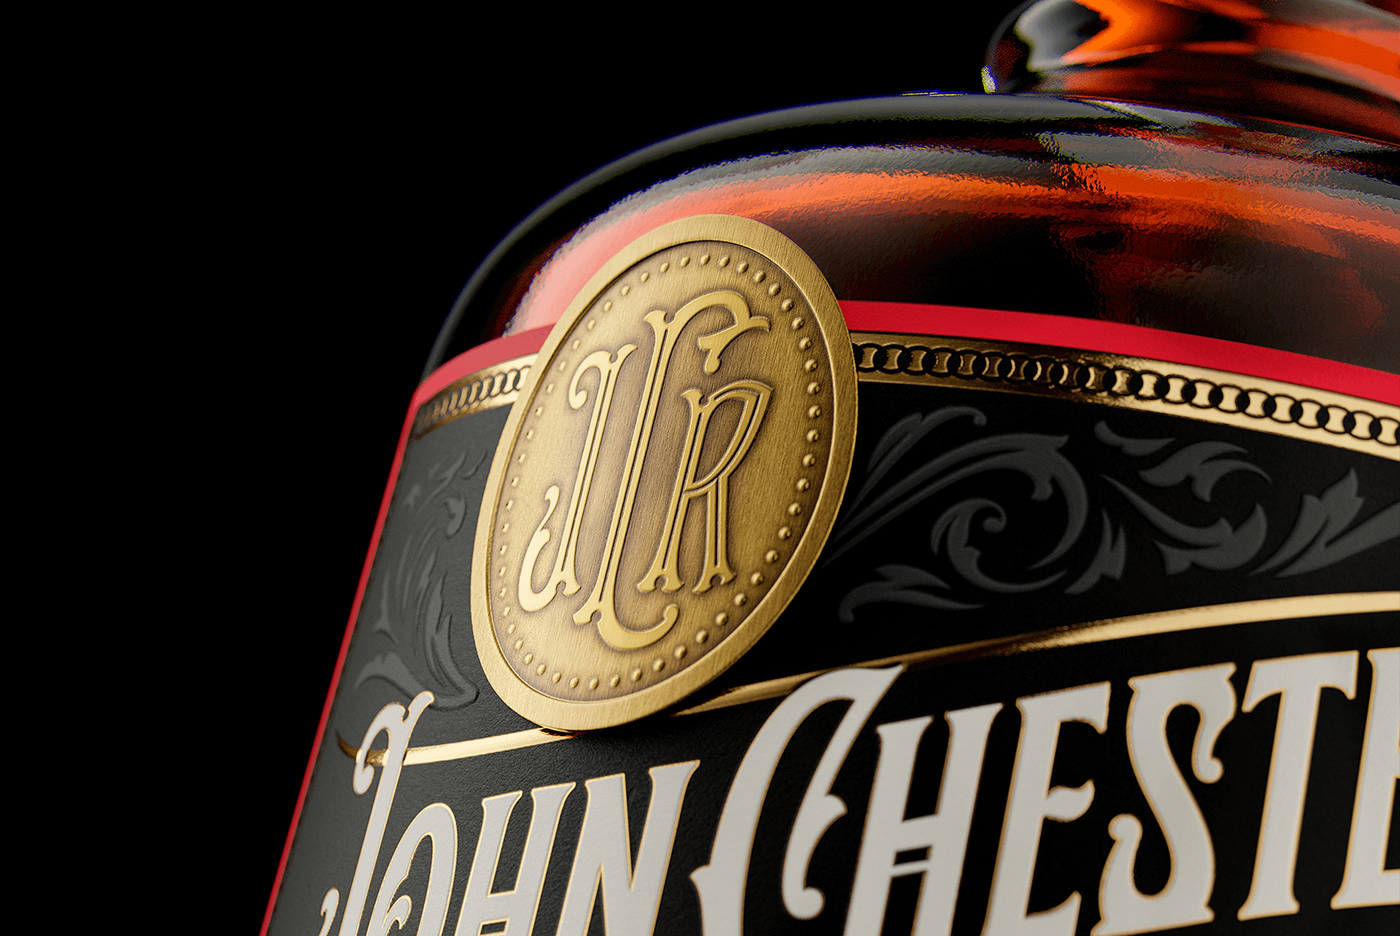 alcohol Label beverage Whiskey Whisky bottle packaging design drink Victorian vintage